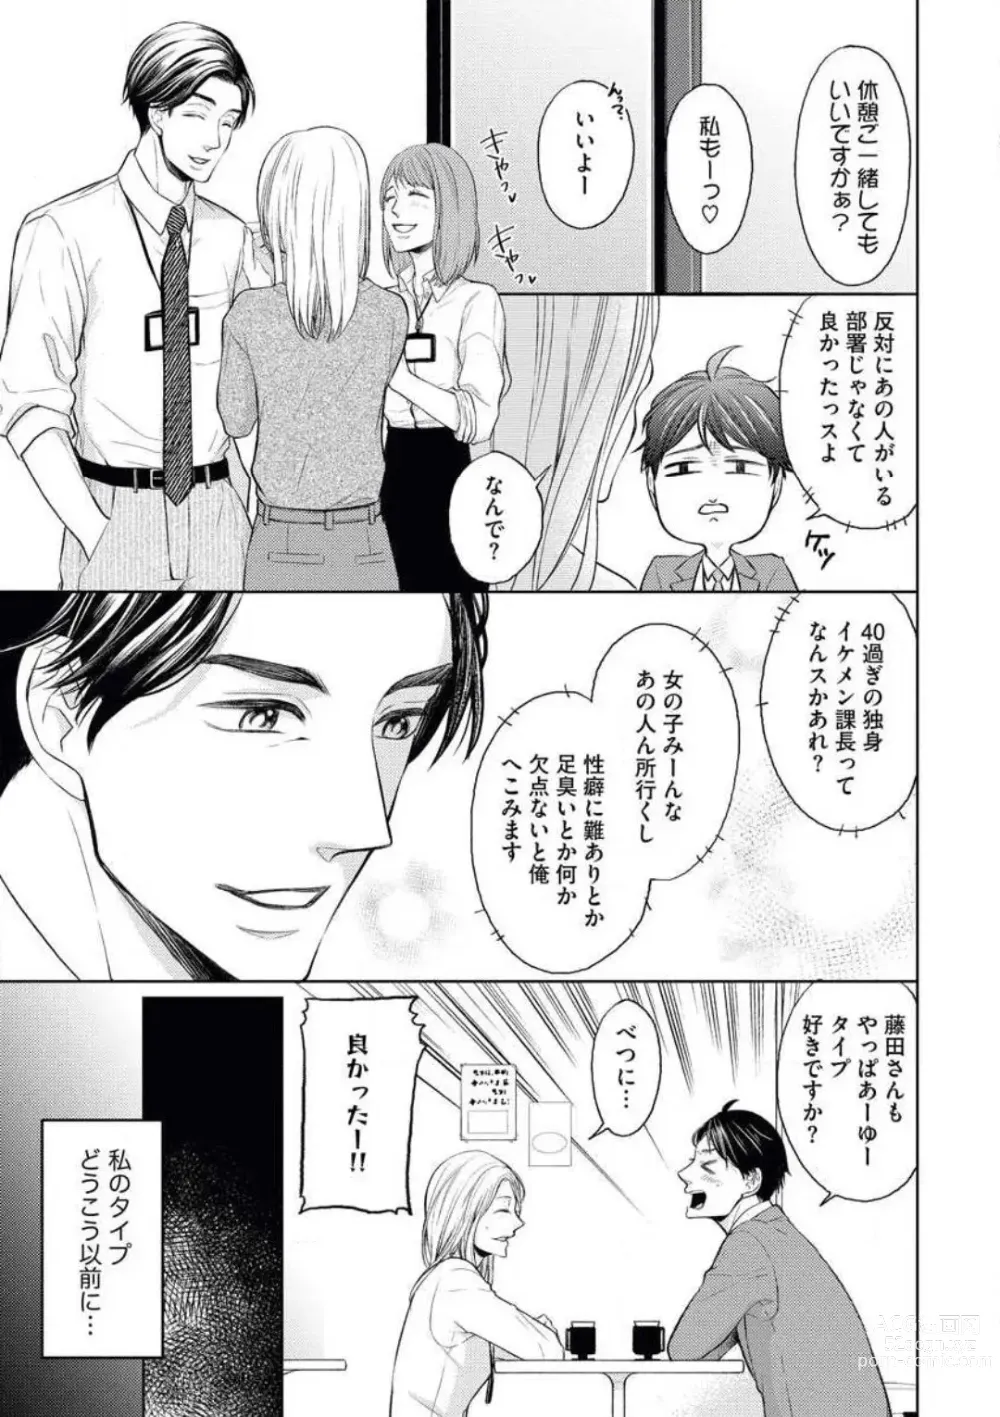 Page 3 of manga Mitsu Koi Maisonette